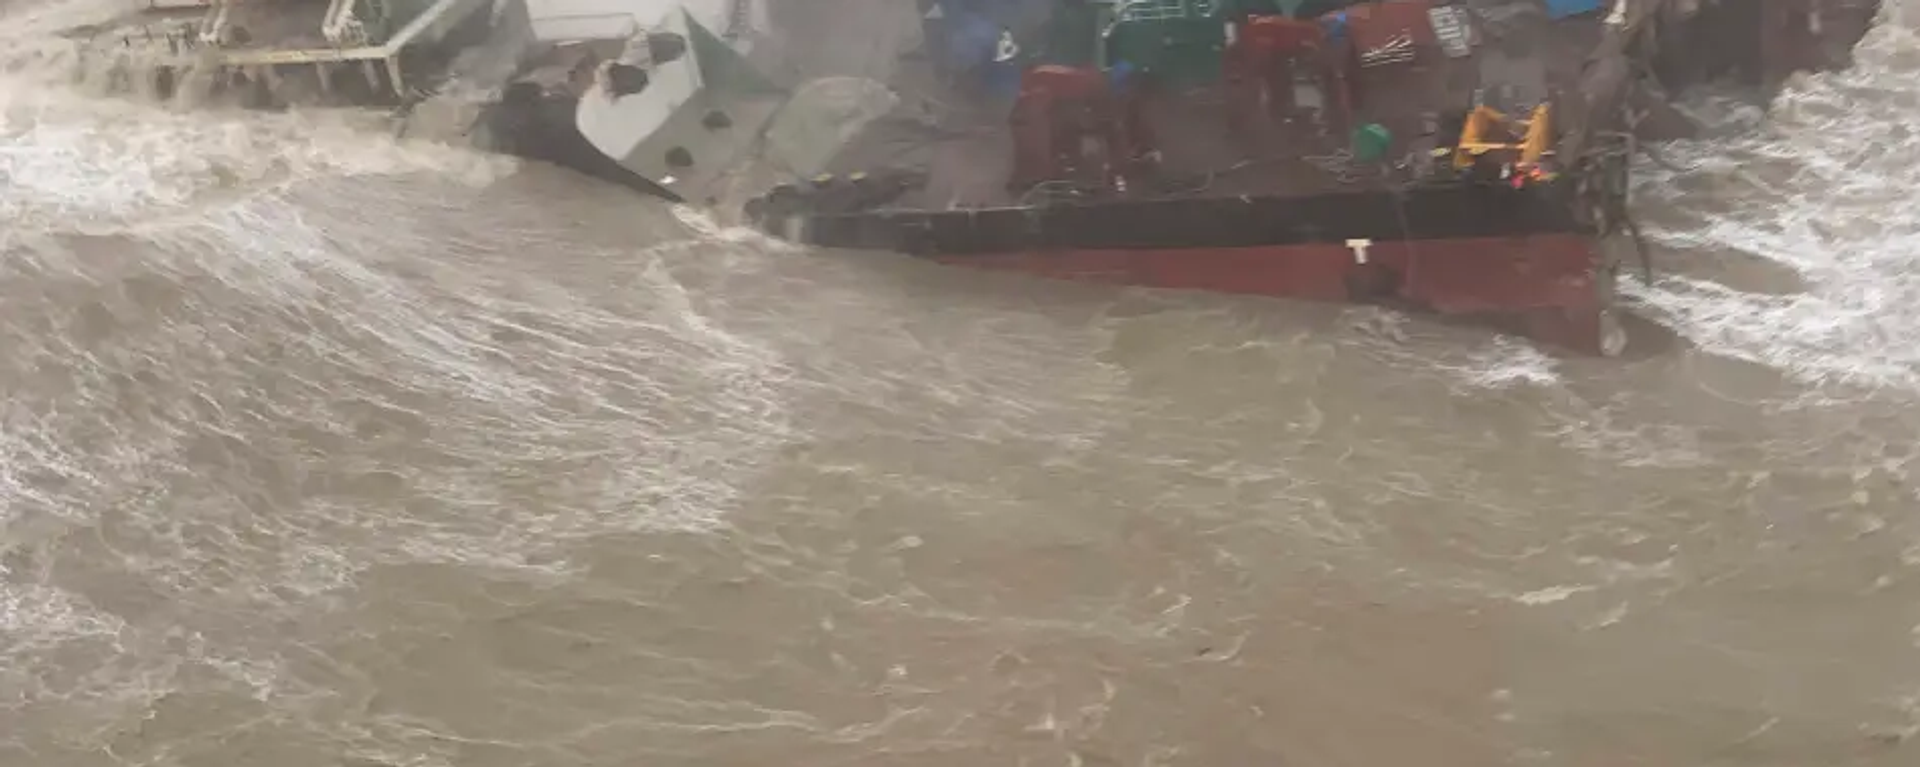 Çin bandıralı vinç ve mühendislik hizmetleri gemisinin, Hong Kong açıklarında tayfun nedeniyle alabora olduğu ve gemideki 27 kişiden haber alınamadığı bildirildi. - Sputnik Türkiye, 1920, 03.07.2022